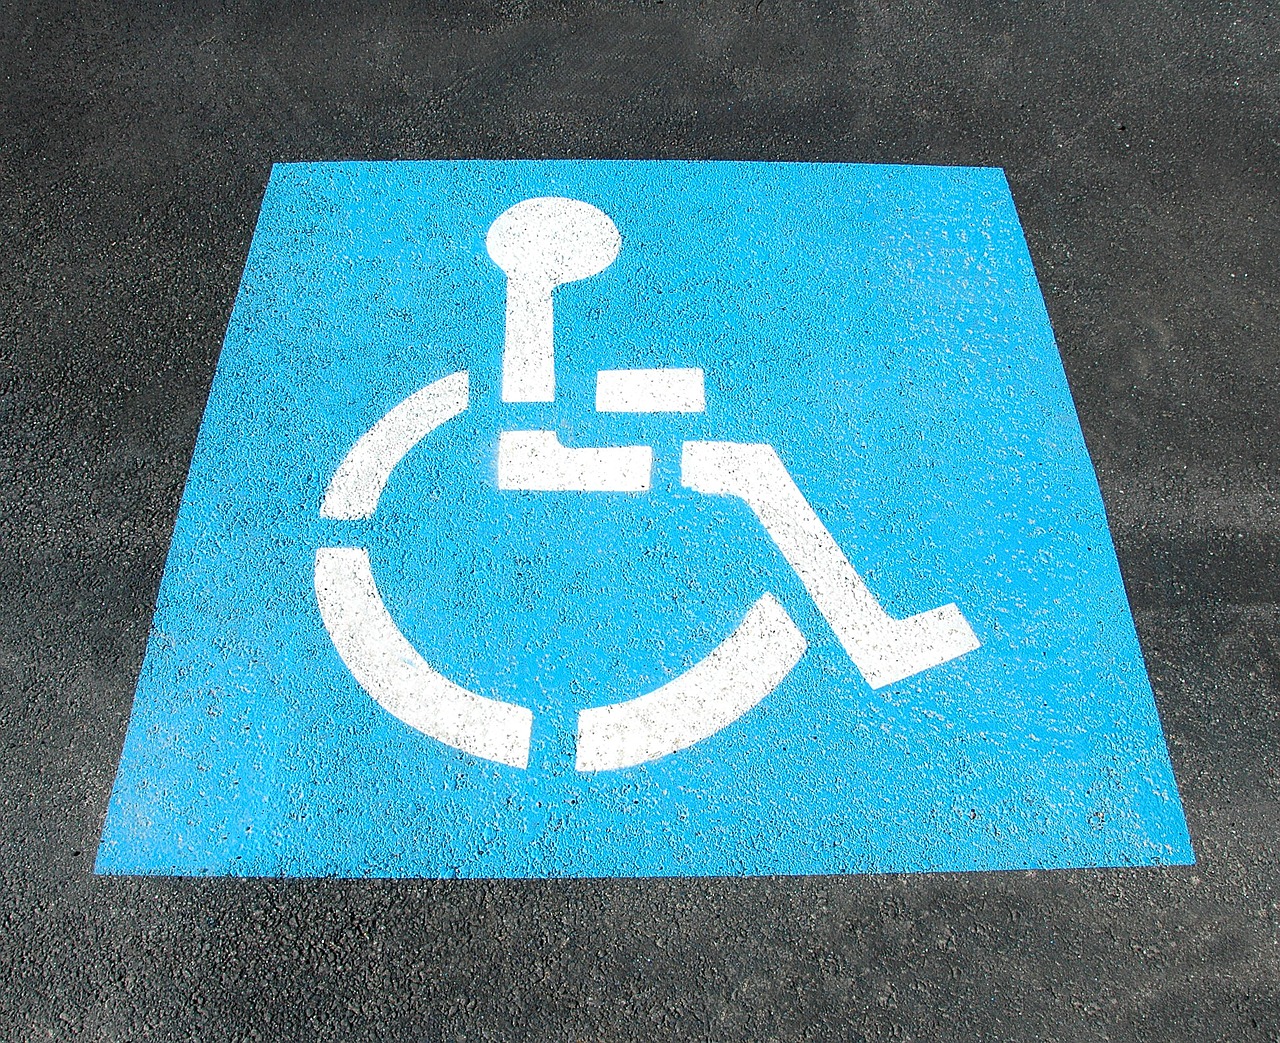 Engelli Araç Alımı Şartları Nelerdir? ÖTV İndirimi Hesaplama Nasıl Yapılır?